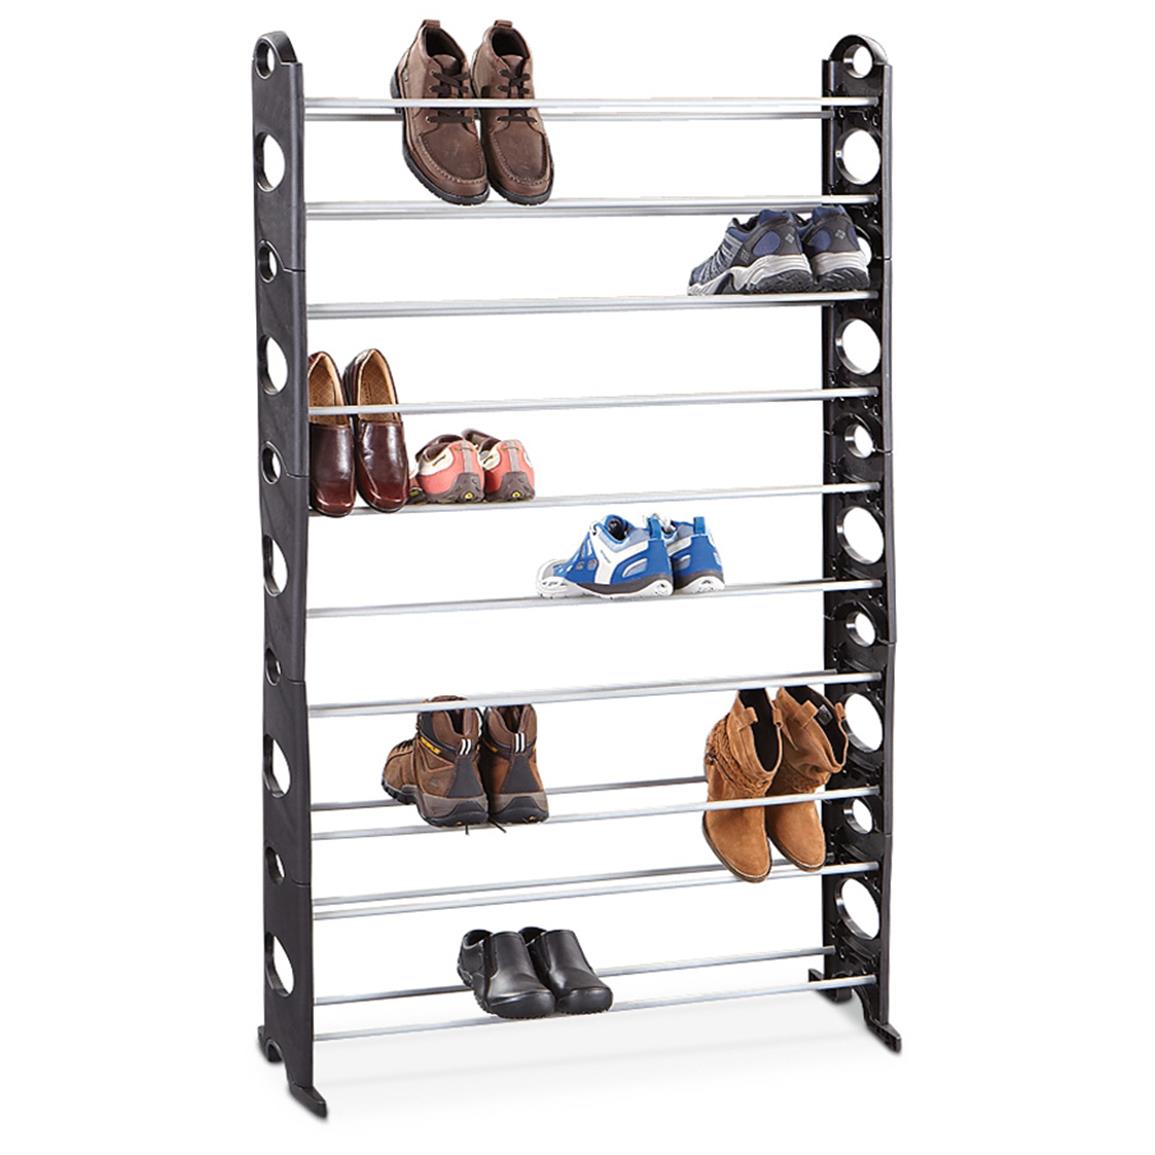 50 Pair Shoe Rack 283206, Housekeeping & Storage at